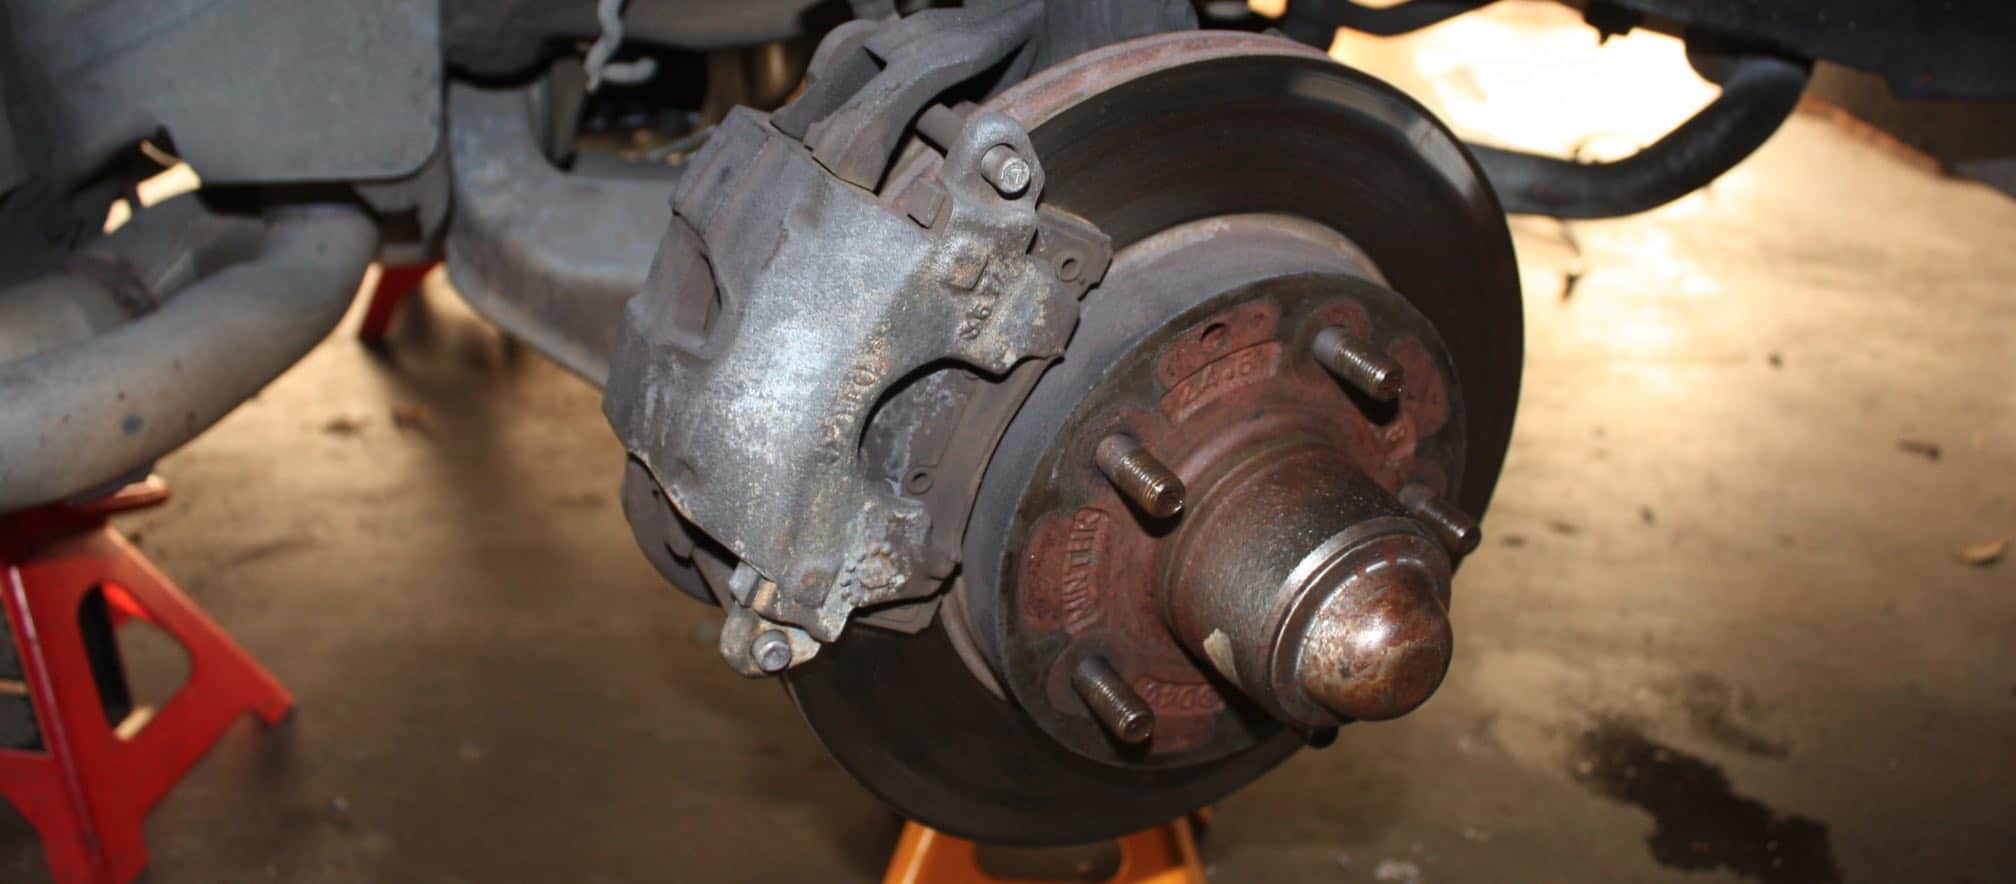 Honda City Warped Rotor Causes